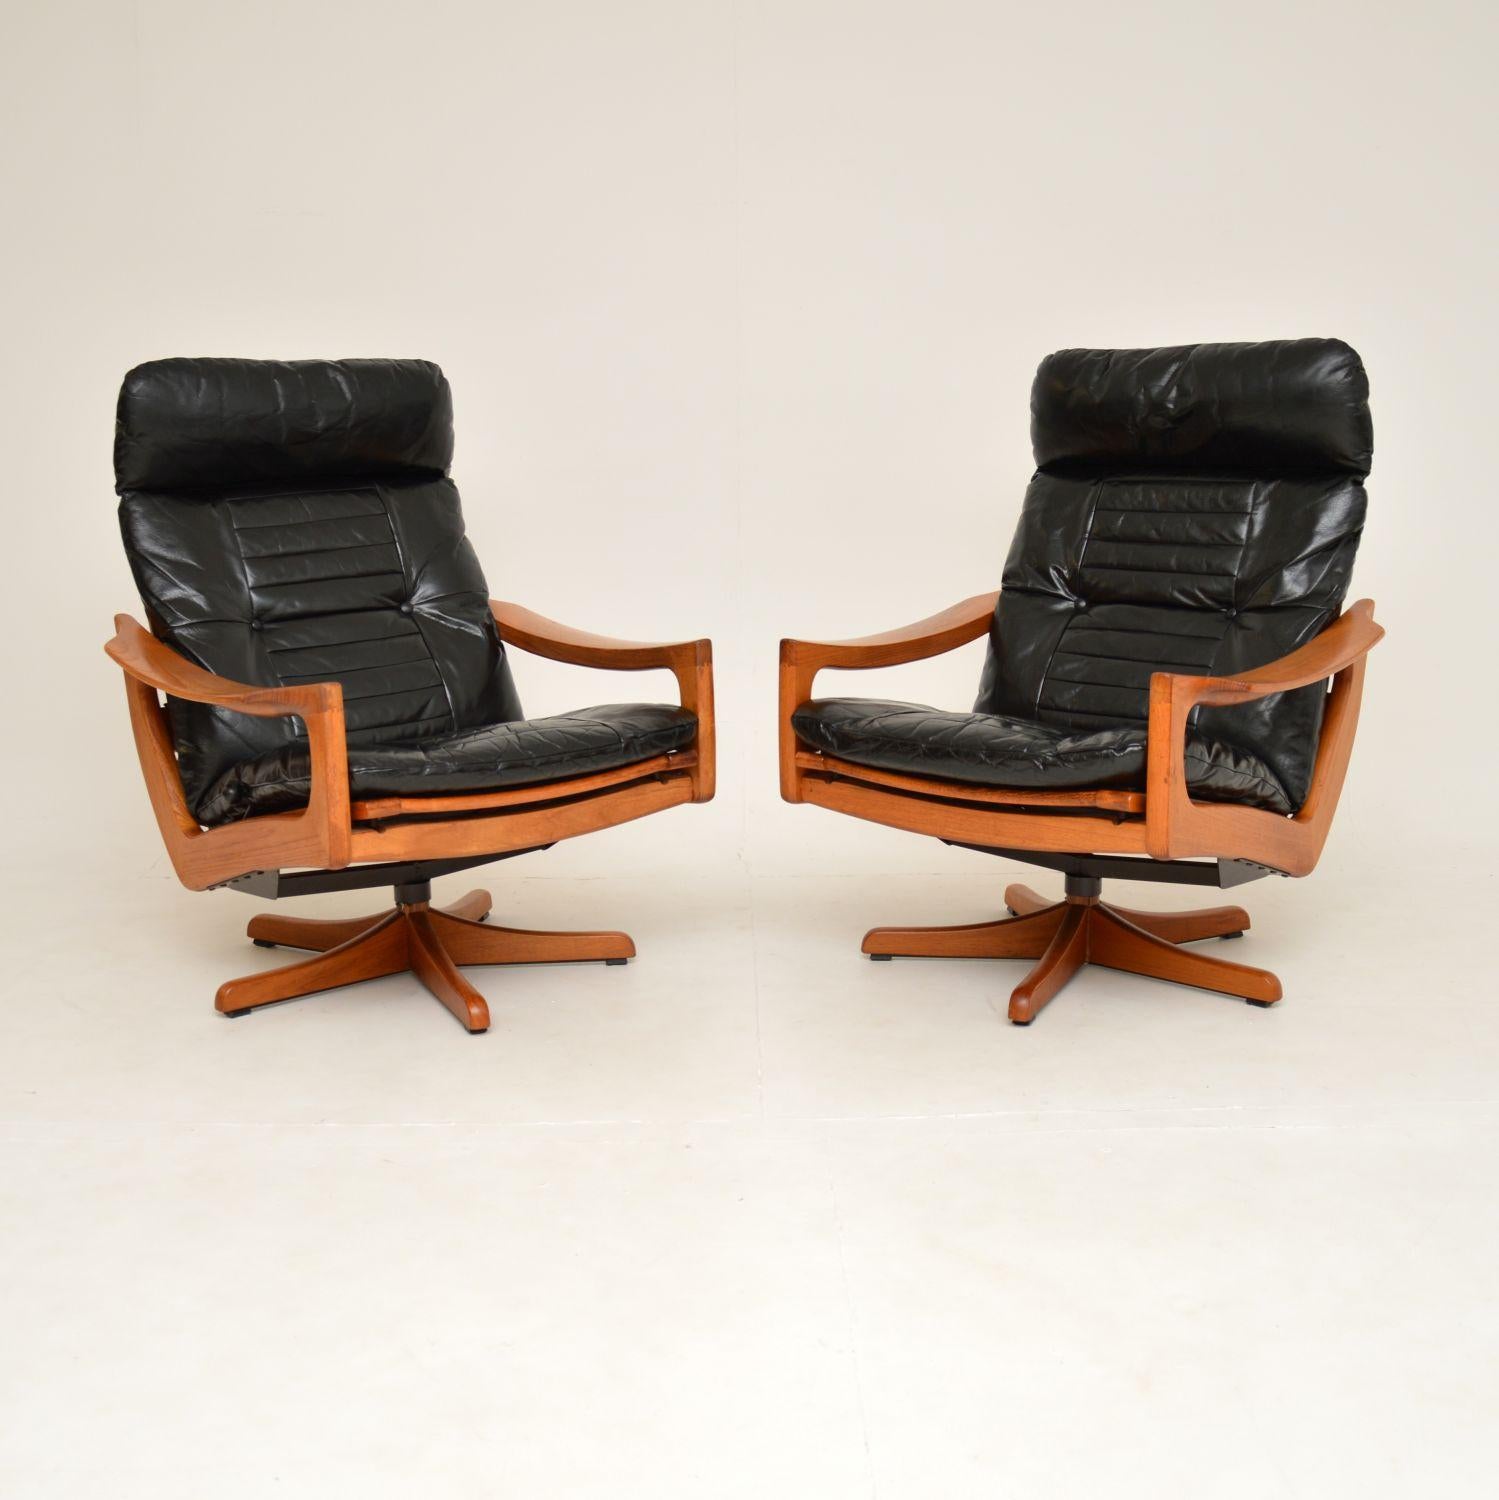 Lied Mobler - 3 For Sale on 1stDibs | lied mobler recliner, lied mobler  lounge chair, lied mobler chair